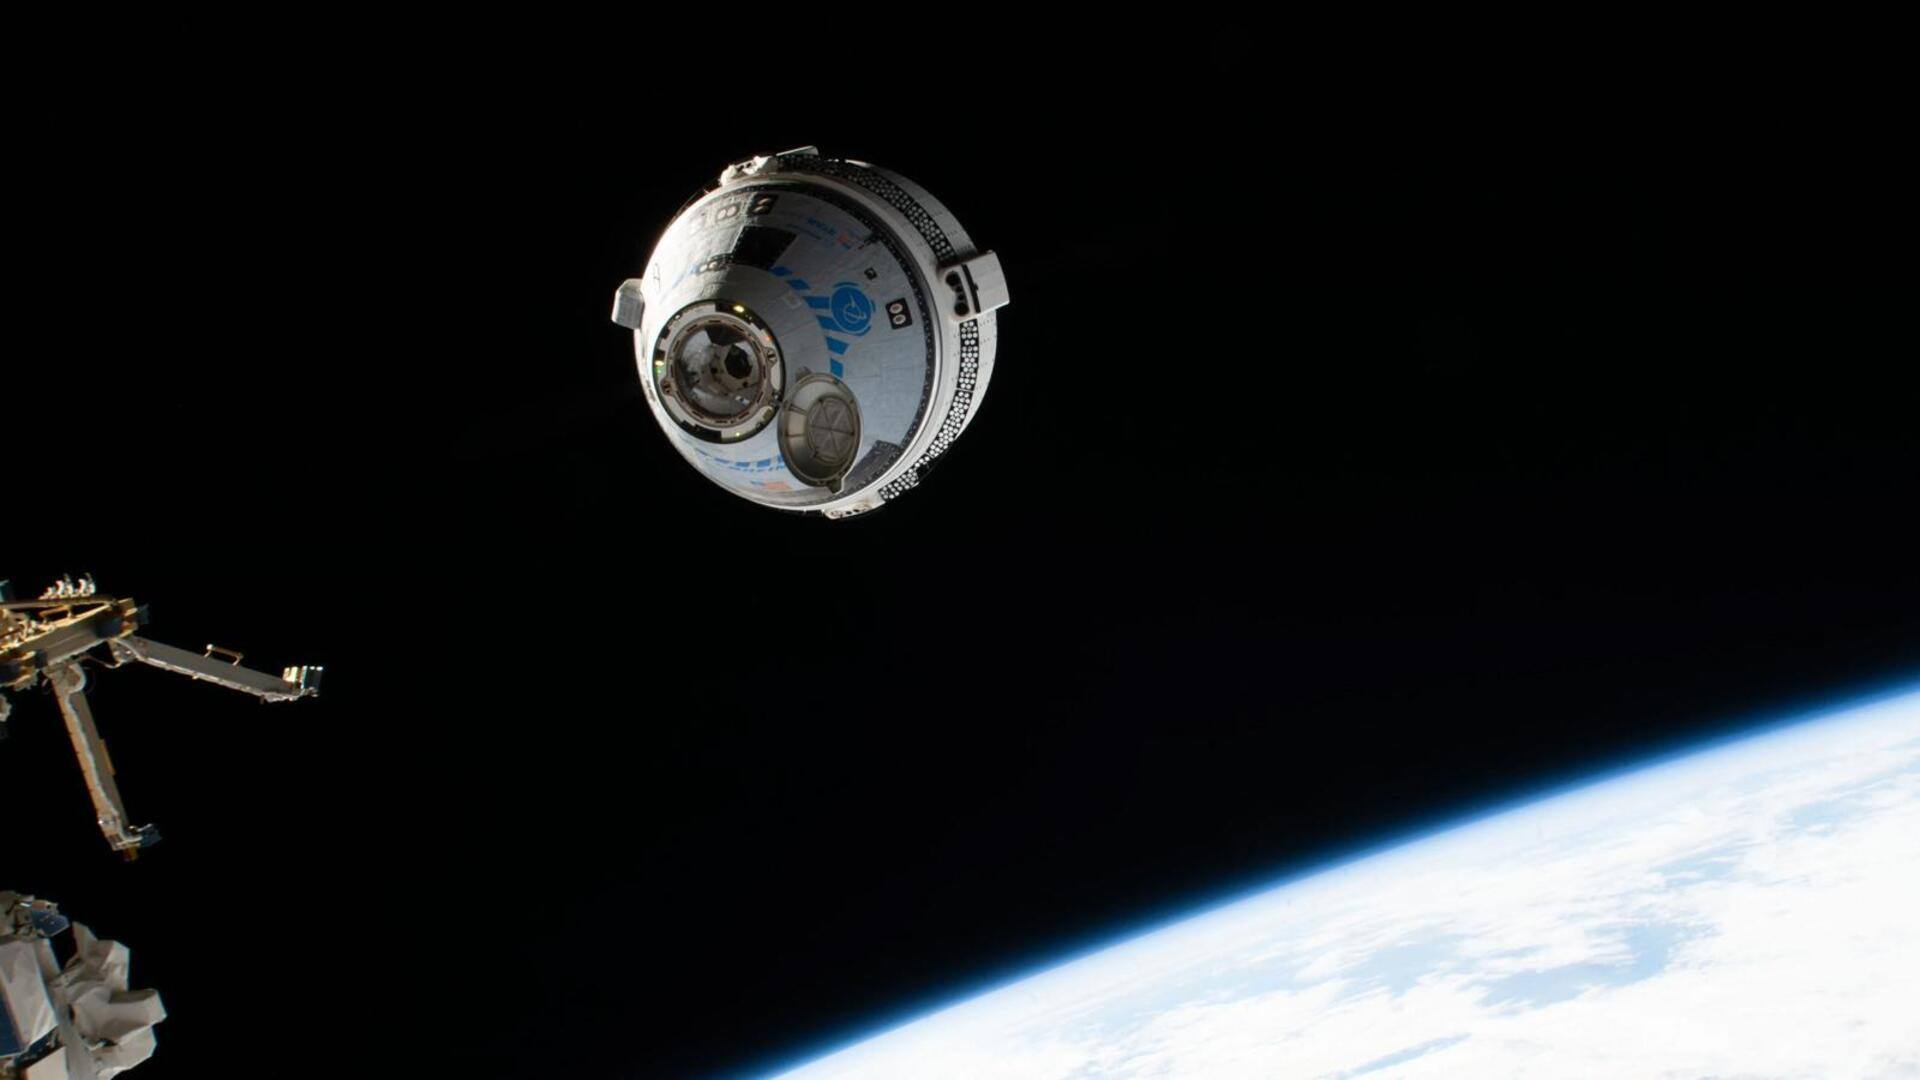 सुनीता विलियम्स को लेकर 26 जून को पृथ्वी पर वापस आएगा अंतरिक्ष यान